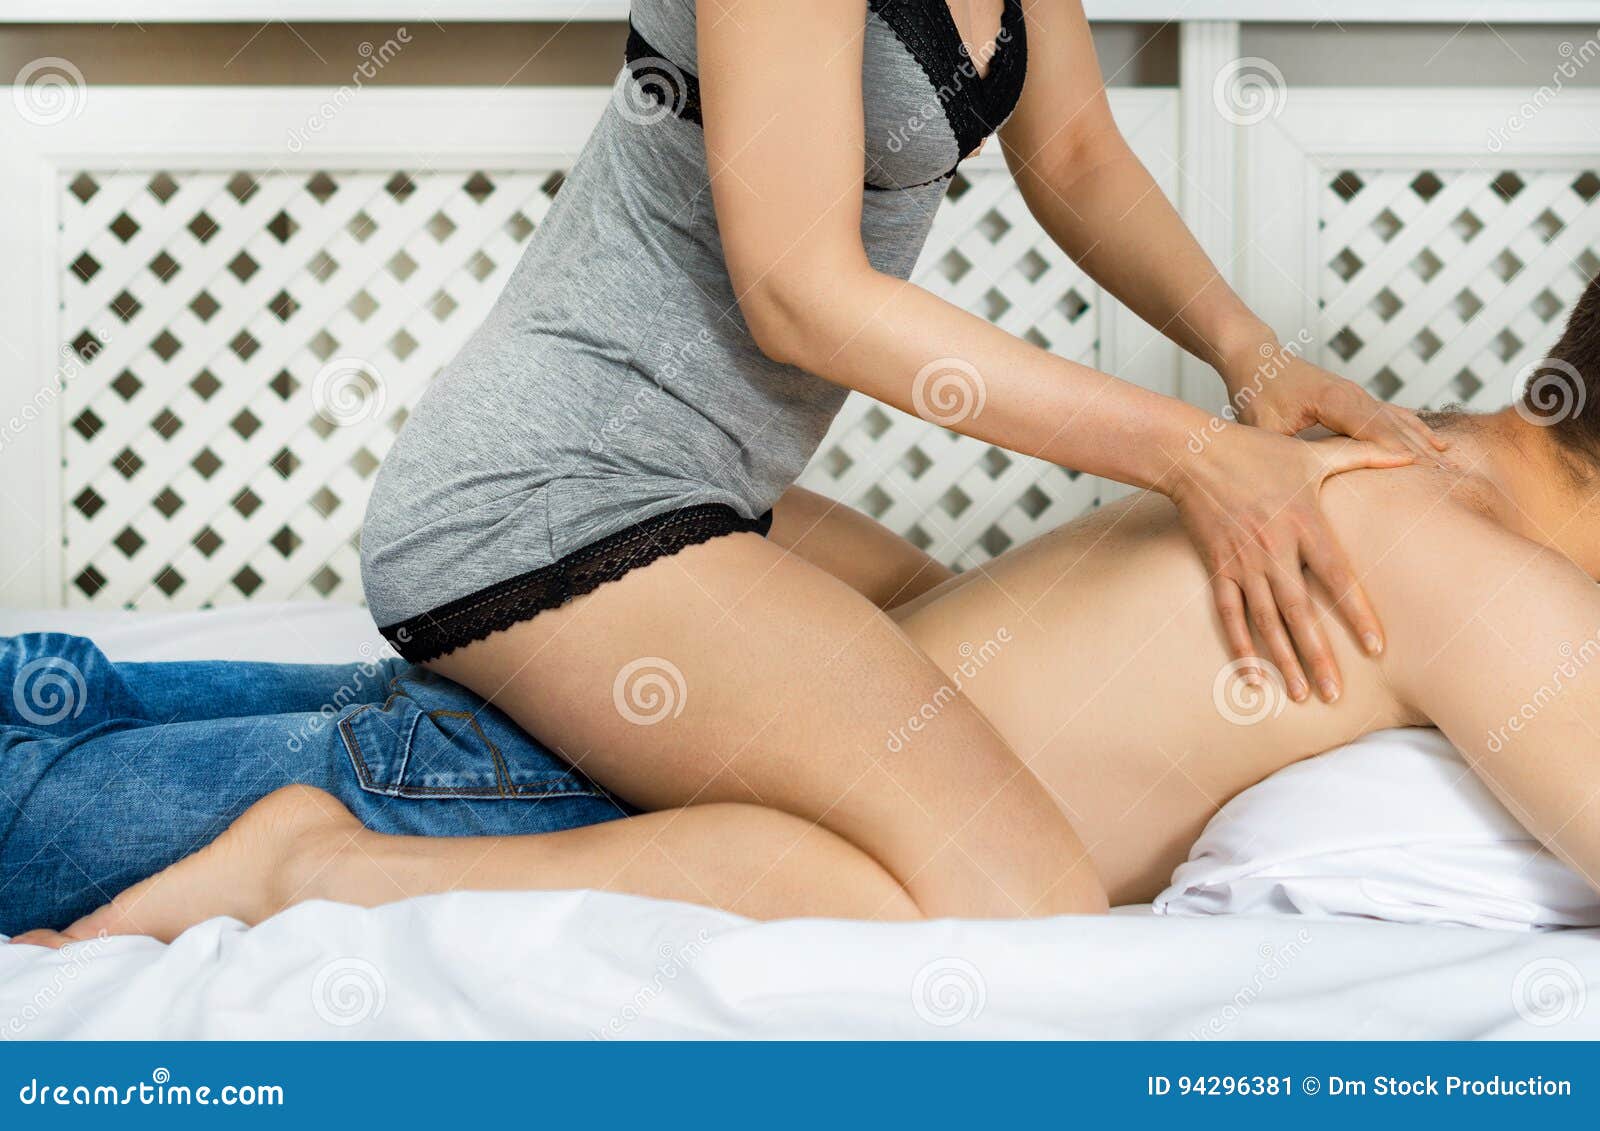 Youtube erotic massage